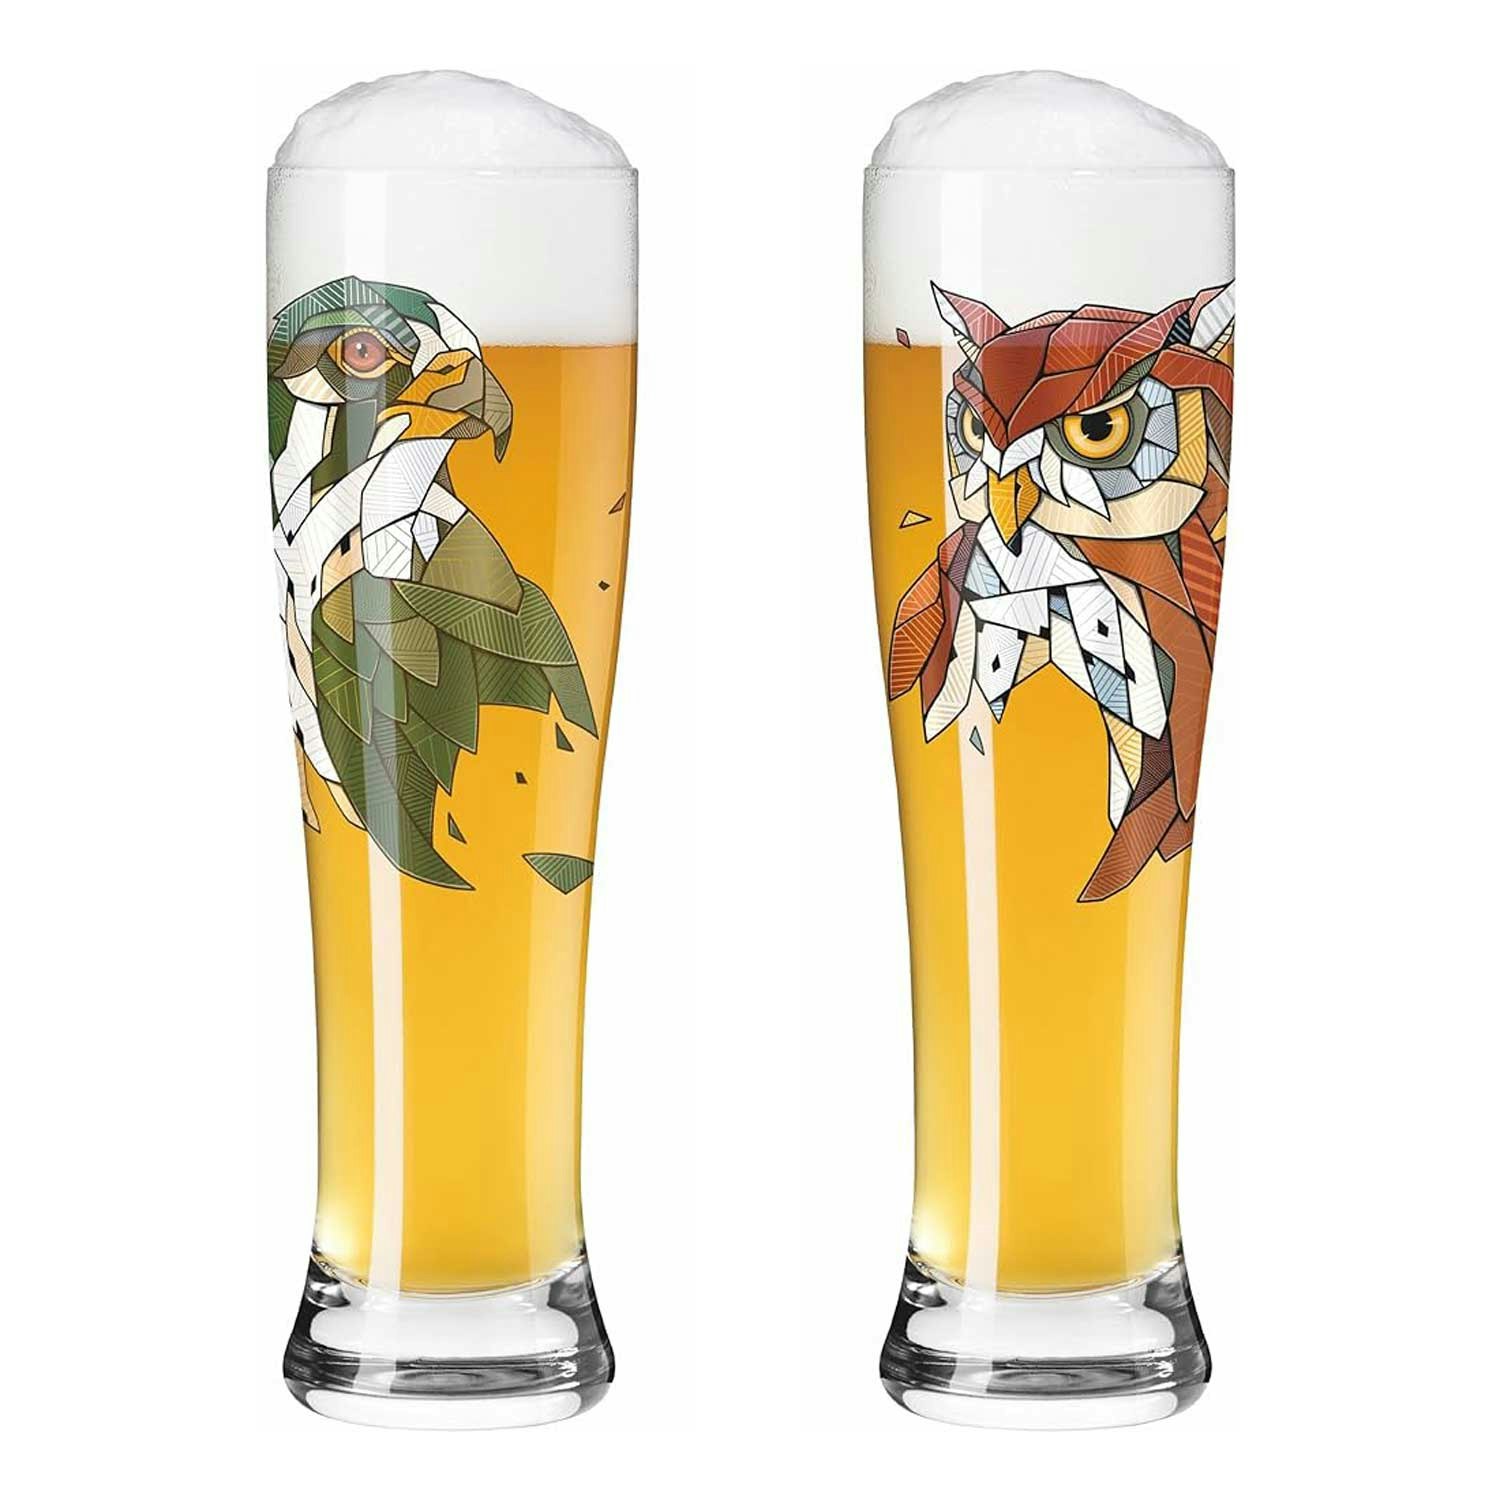 Brauchzeit Beer Glass 2-pack, F23 - Ritzenhoff @ RoyalDesign